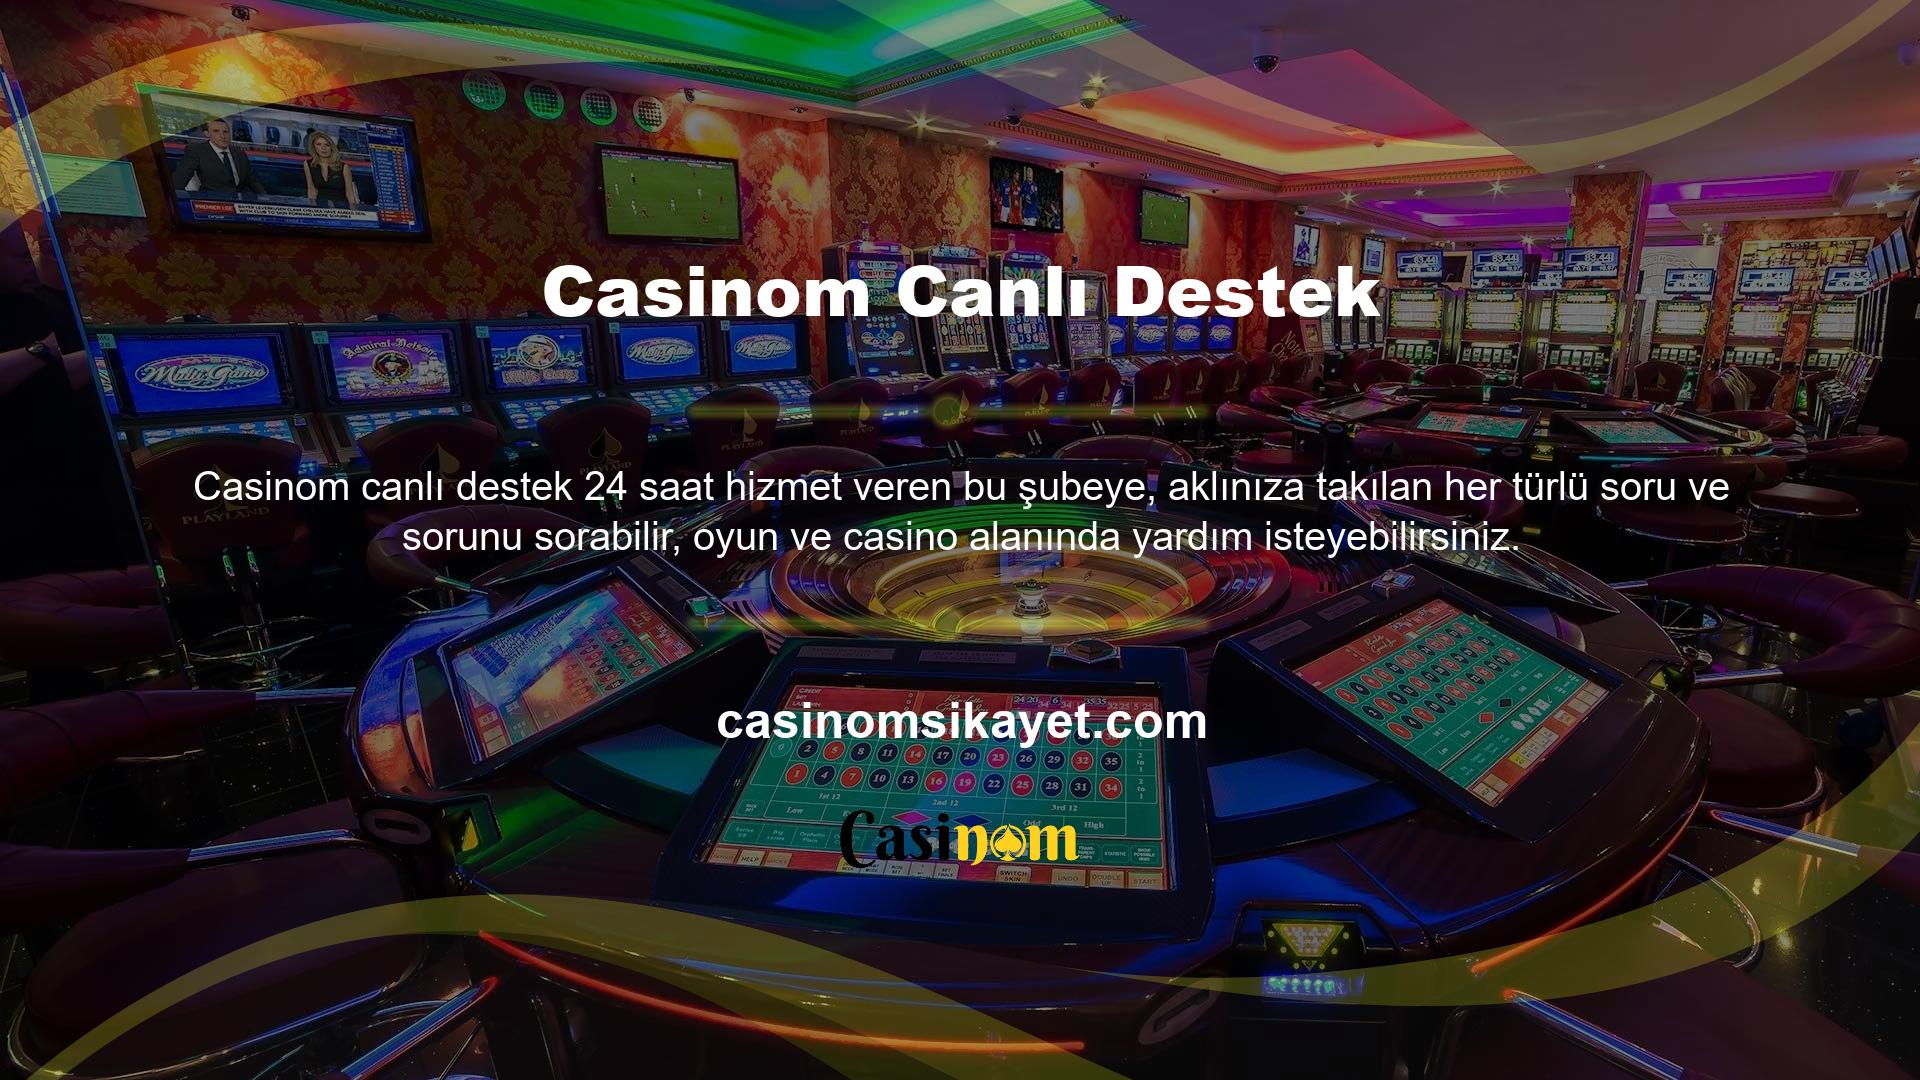 Slot Makinesi Oyunları Casinom Sayfası, istediğiniz zaman yatırım yapabileceğiniz ve karınızı filtreler olmadan görebileceğiniz bir mobil uygulama ile kullanıcılara destek verir, Casinom mobil uygulaması ile web sitesi gibi güvenilir yatırımlardan kazanç sağlayabilirsiniz